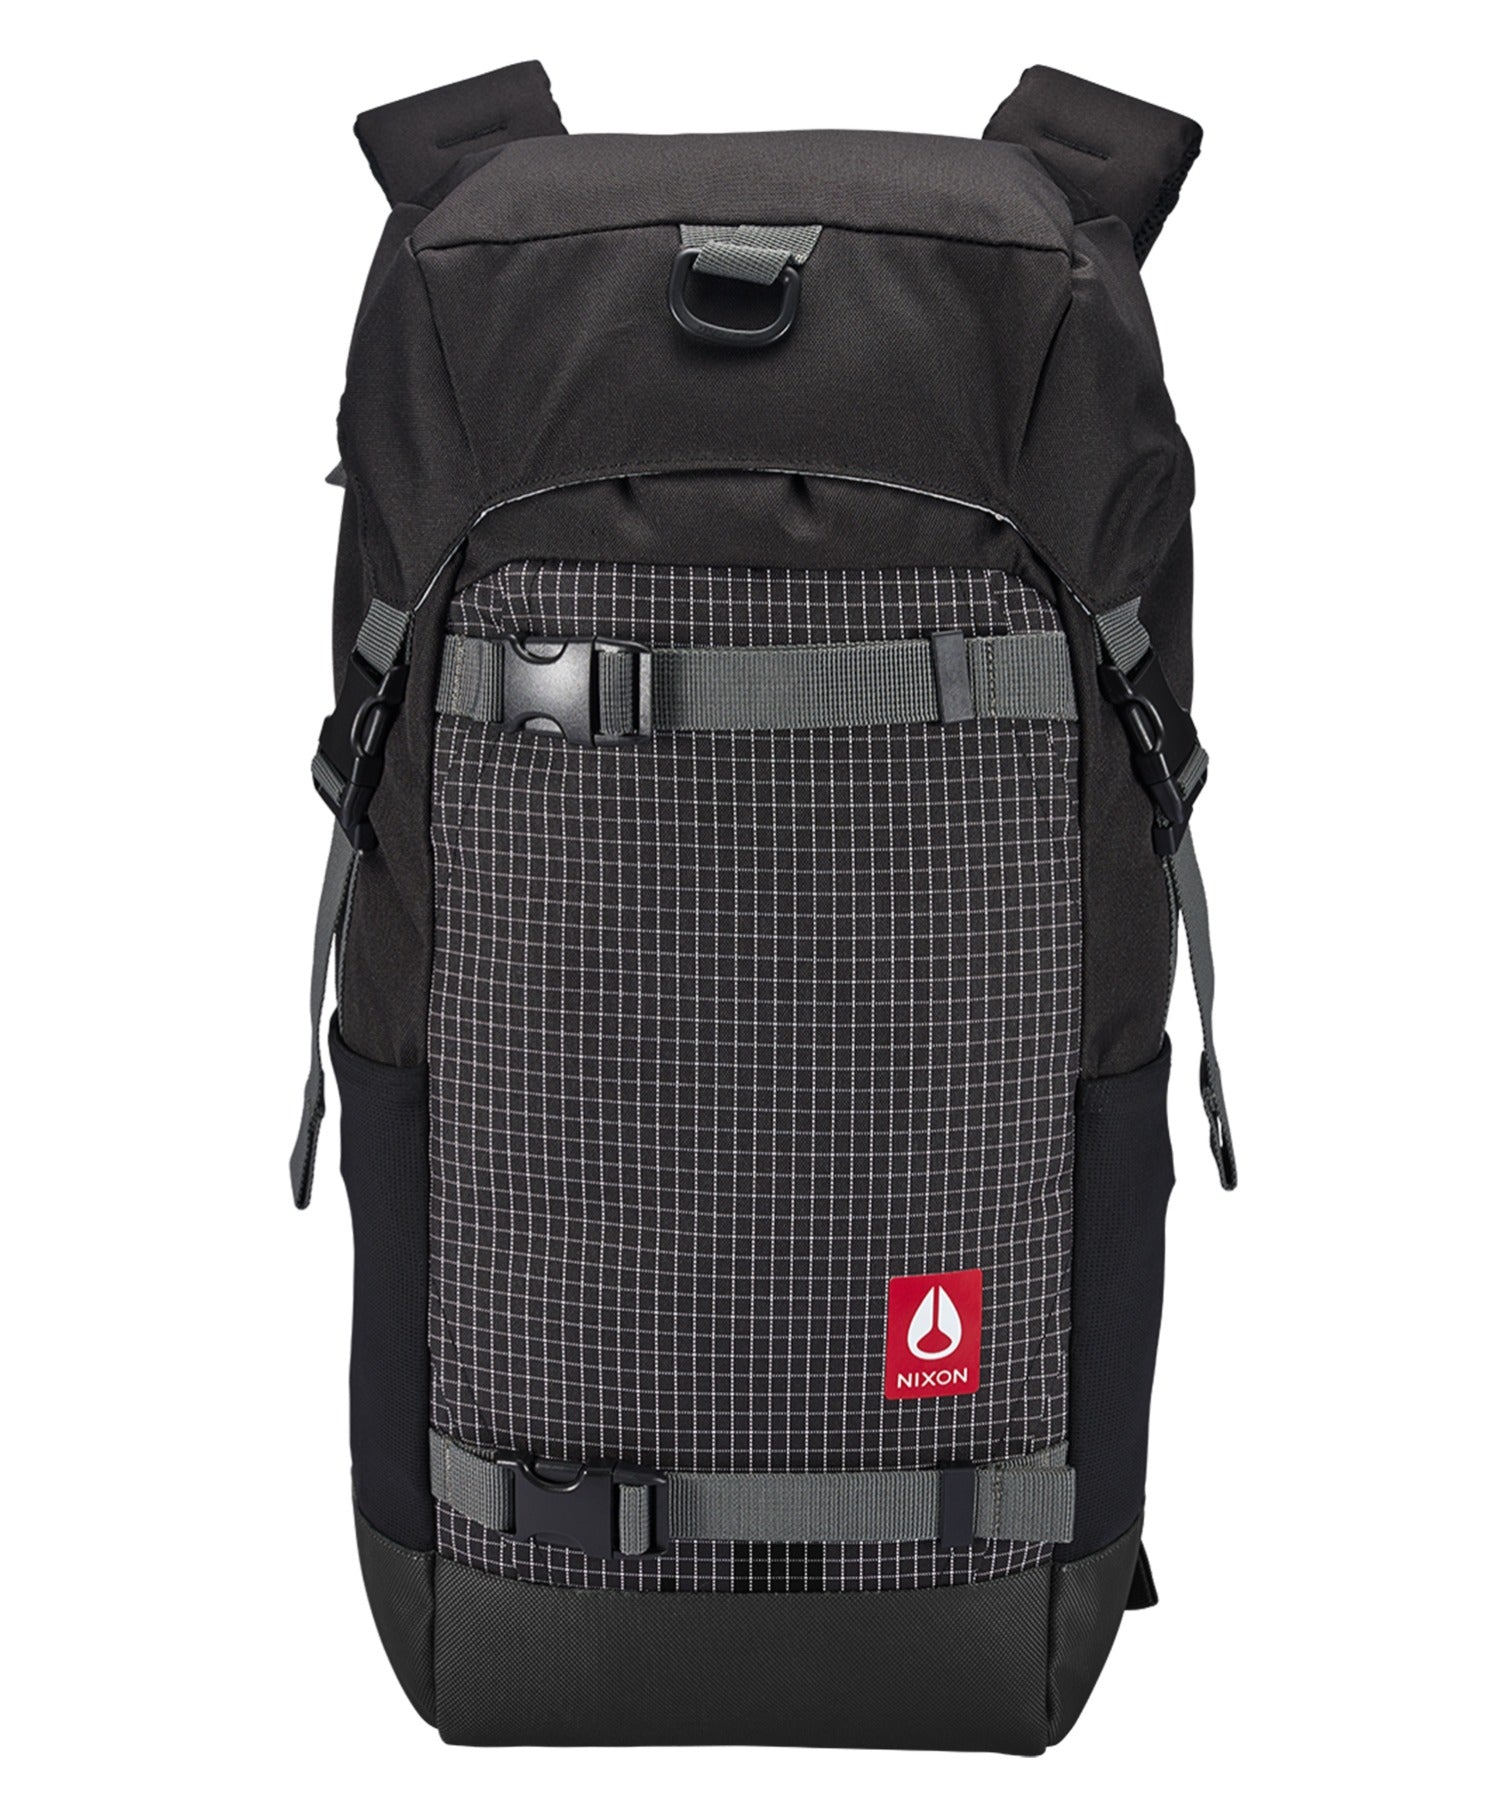 NIXON/ニクソン Landlock4 Backpack 25L